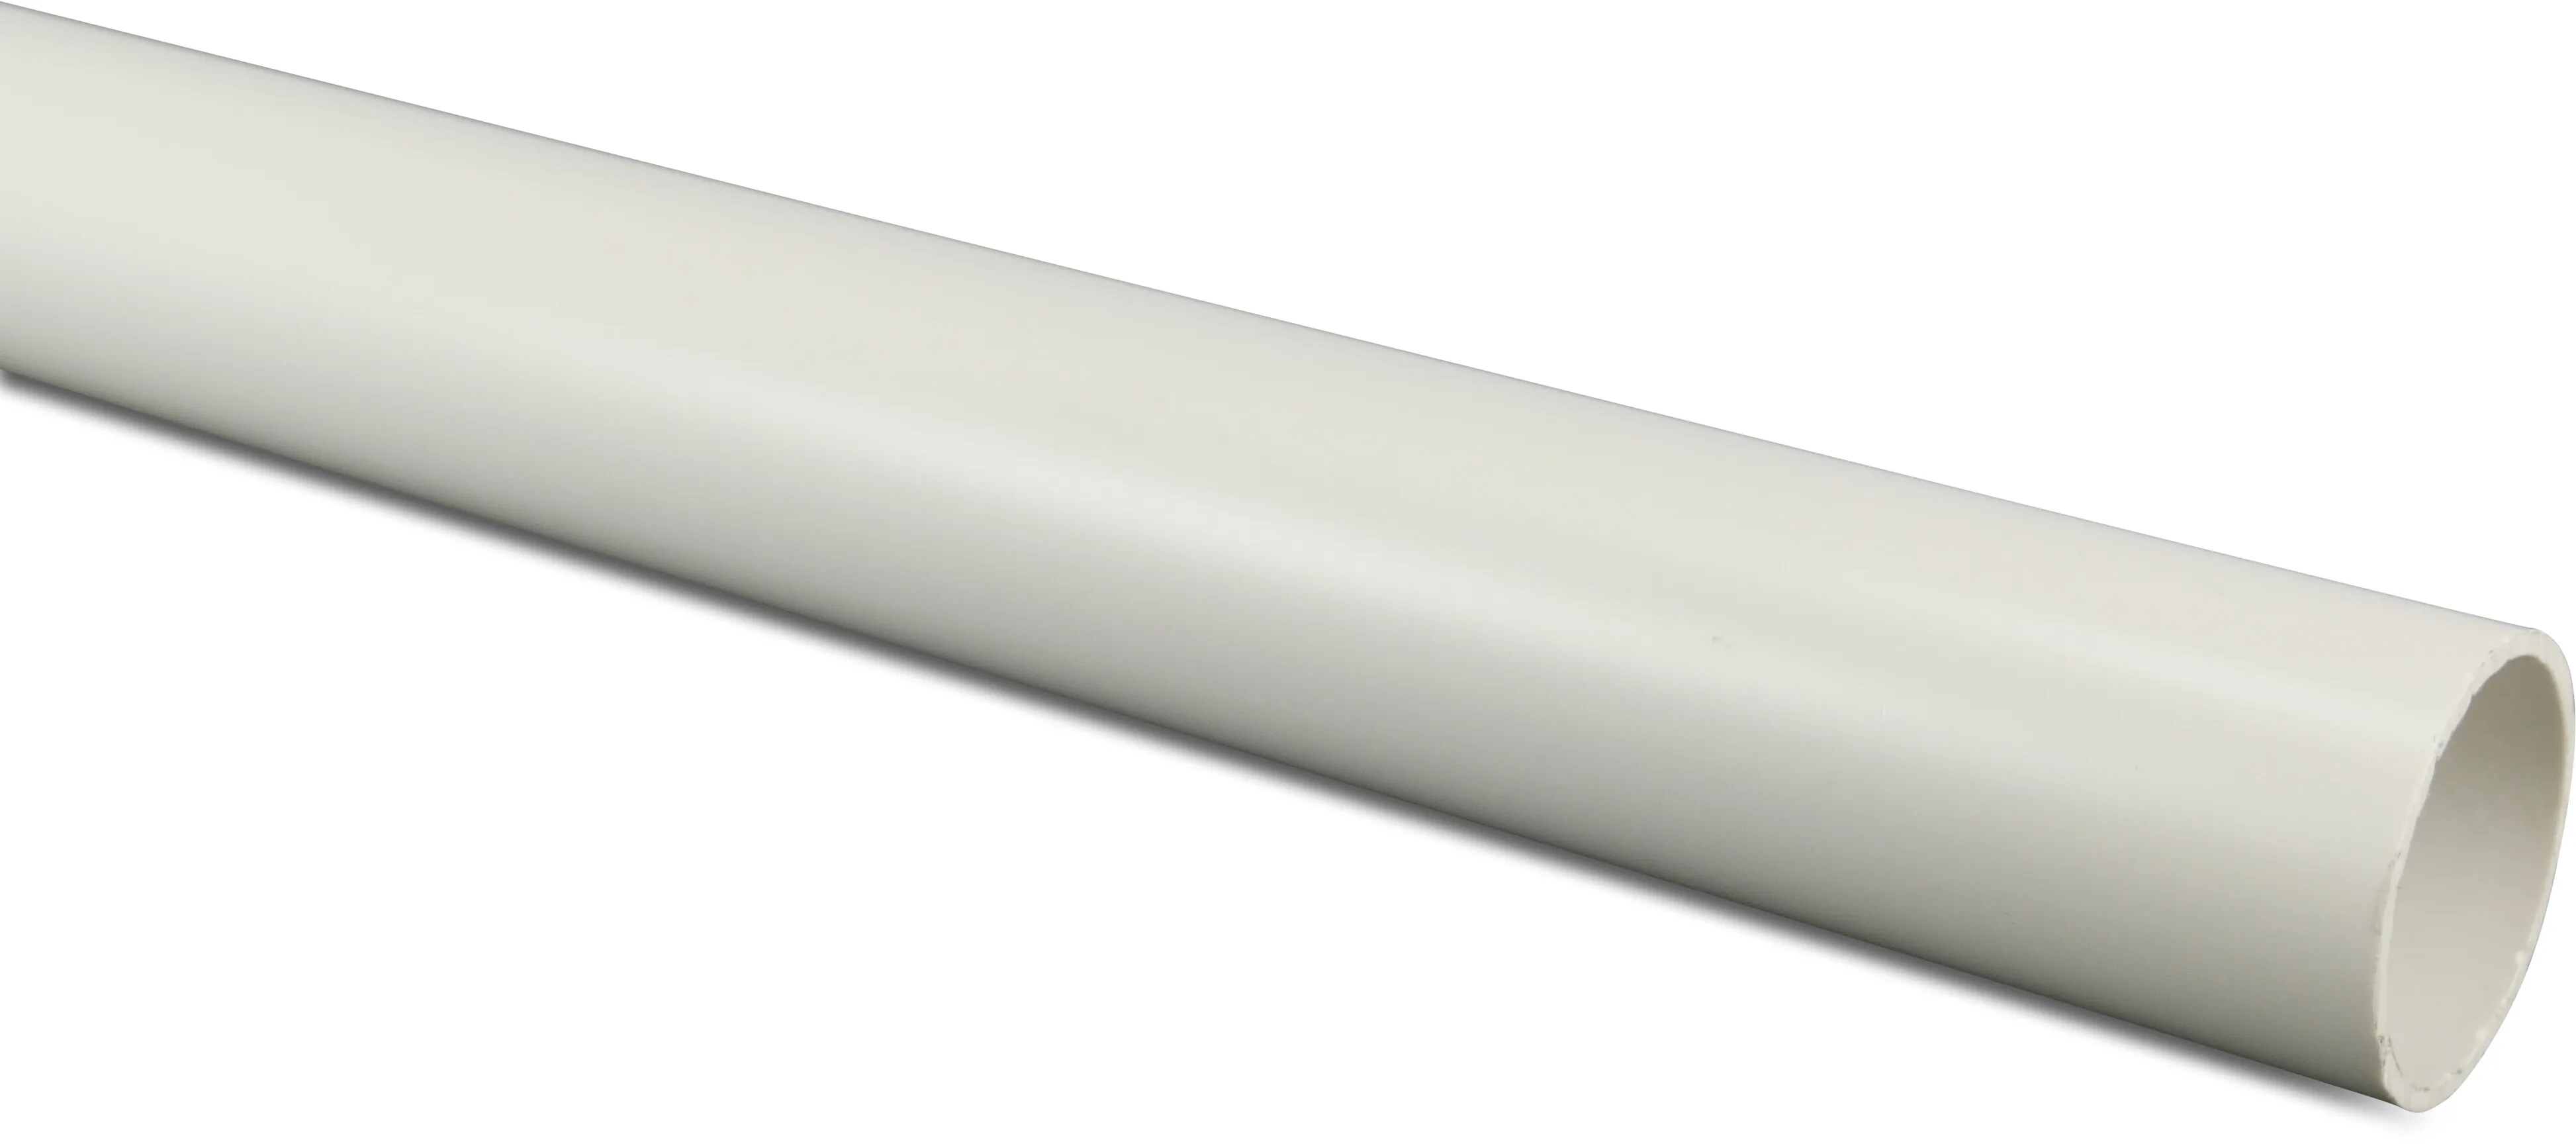 Pressure pipe ABS 1 1/2" x 2,5 mm plain Class D-PN12 white 3m